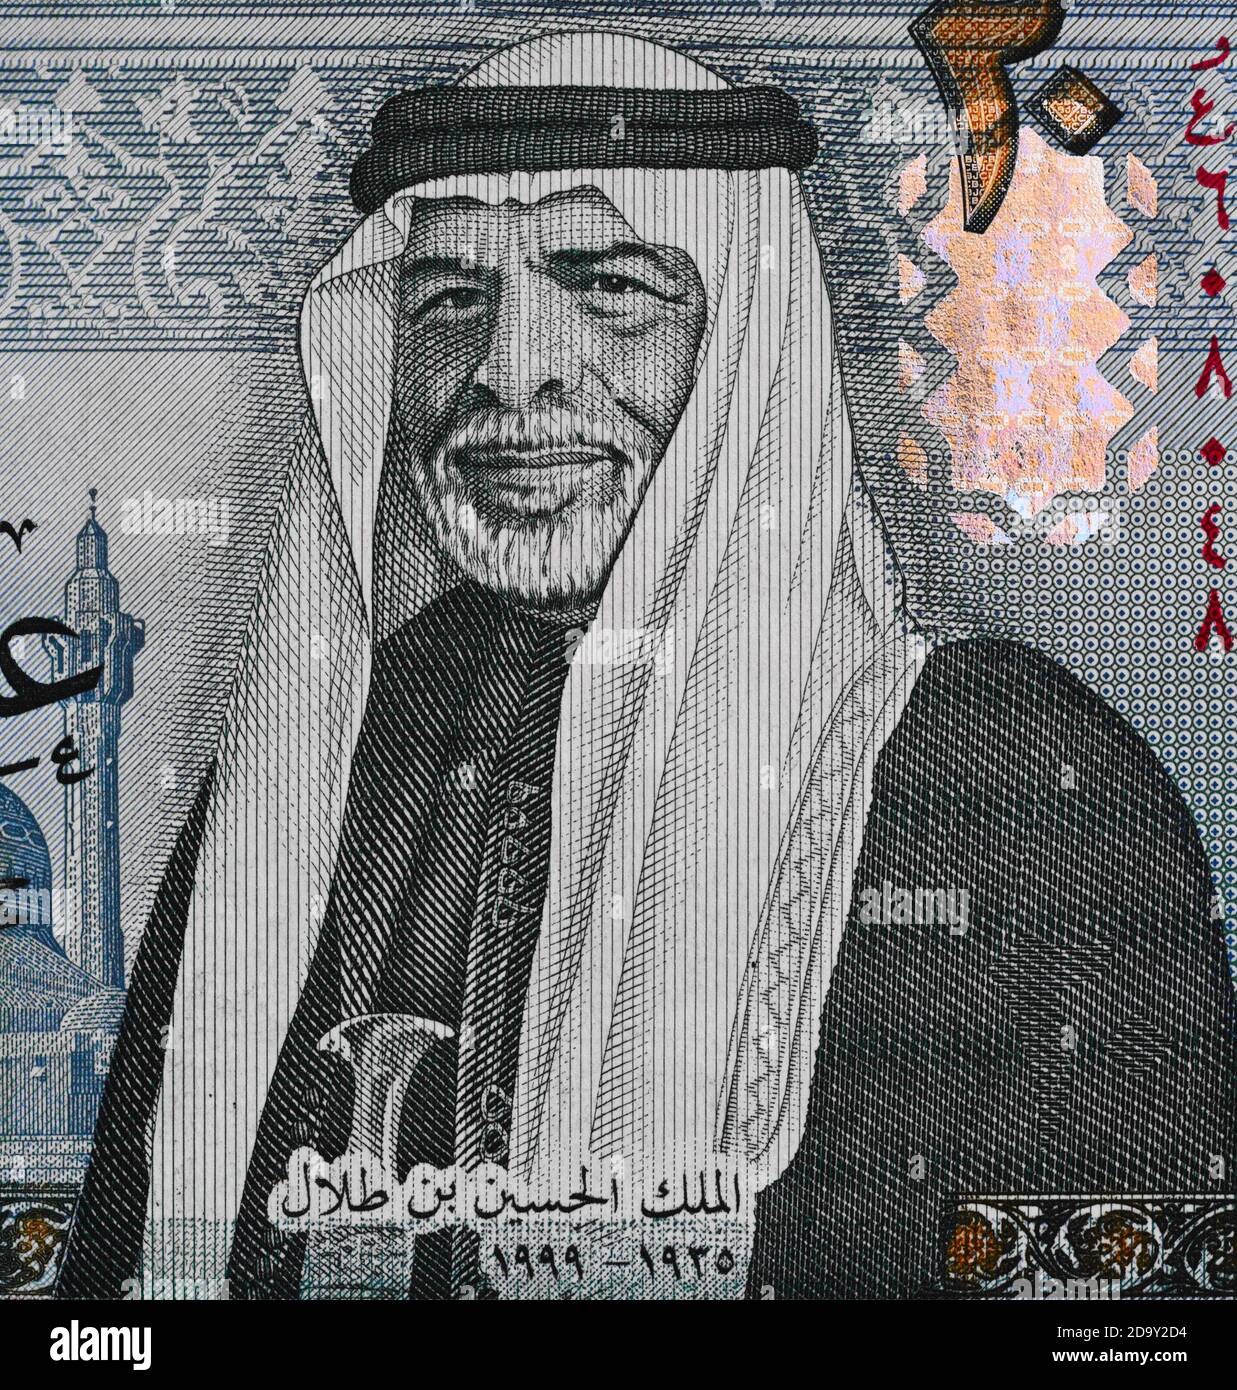 Portrait du roi de Jordanie Hussein bin Talal sur 20 macro de billets de dinar jordanien, clôture de l'argent au Moyen-Orient Banque D'Images